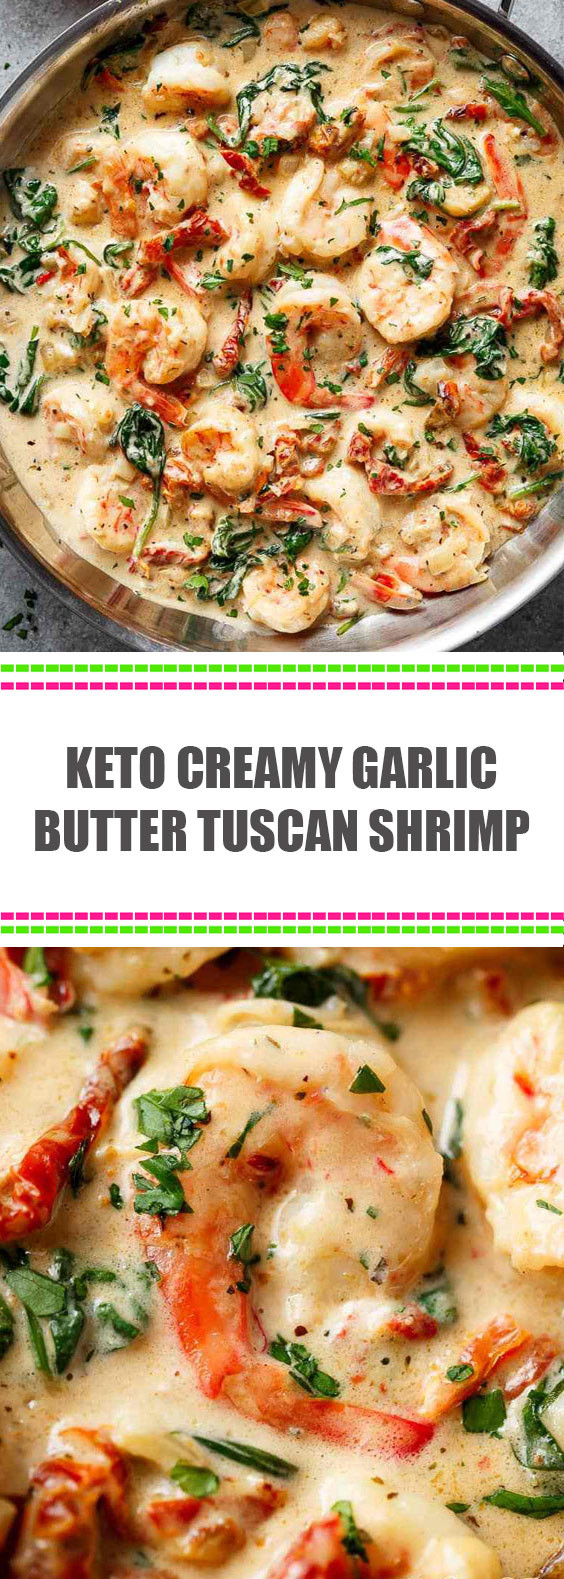 Creamy Garlic Butter Tuscan Shrimp Keto
 Keto Creamy Garlic Butter Tuscan Shrimp